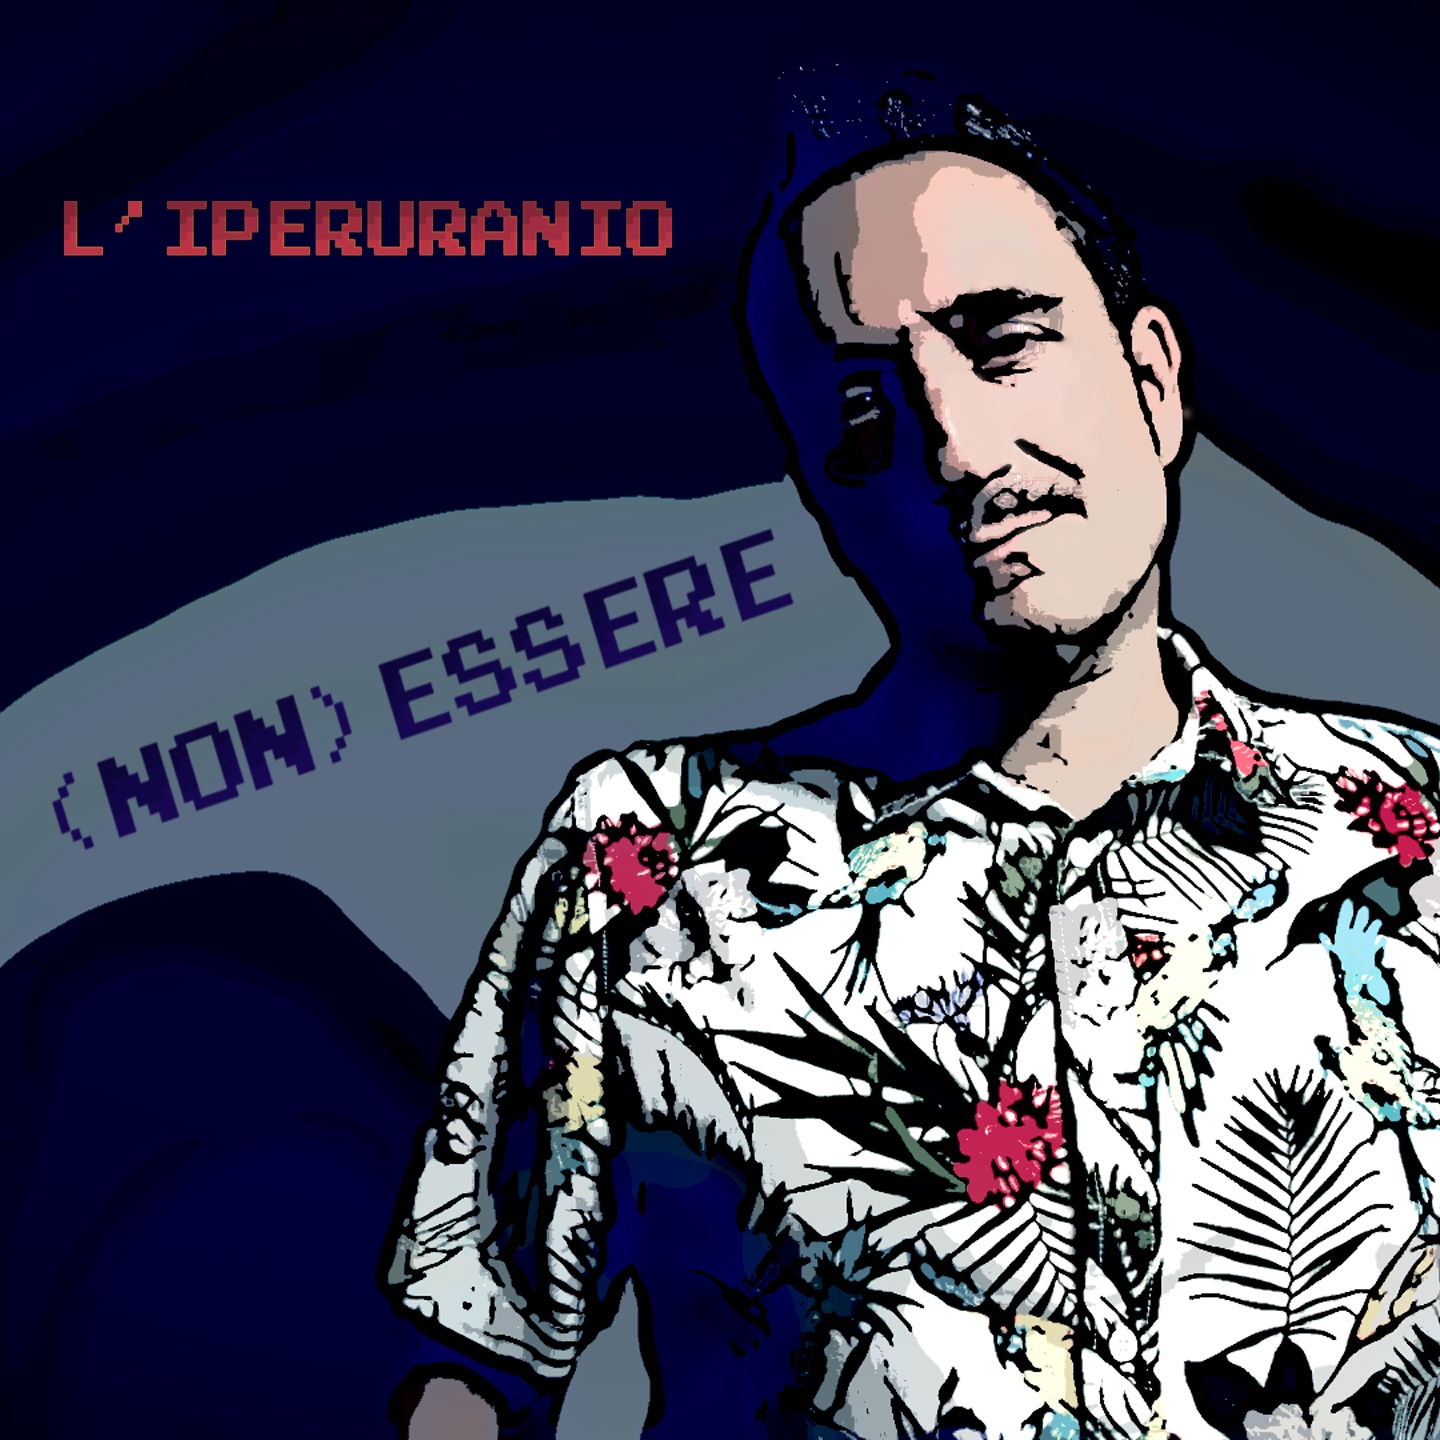 Tearsheets - L'Iperuranio - "(Non) Essere" single cover